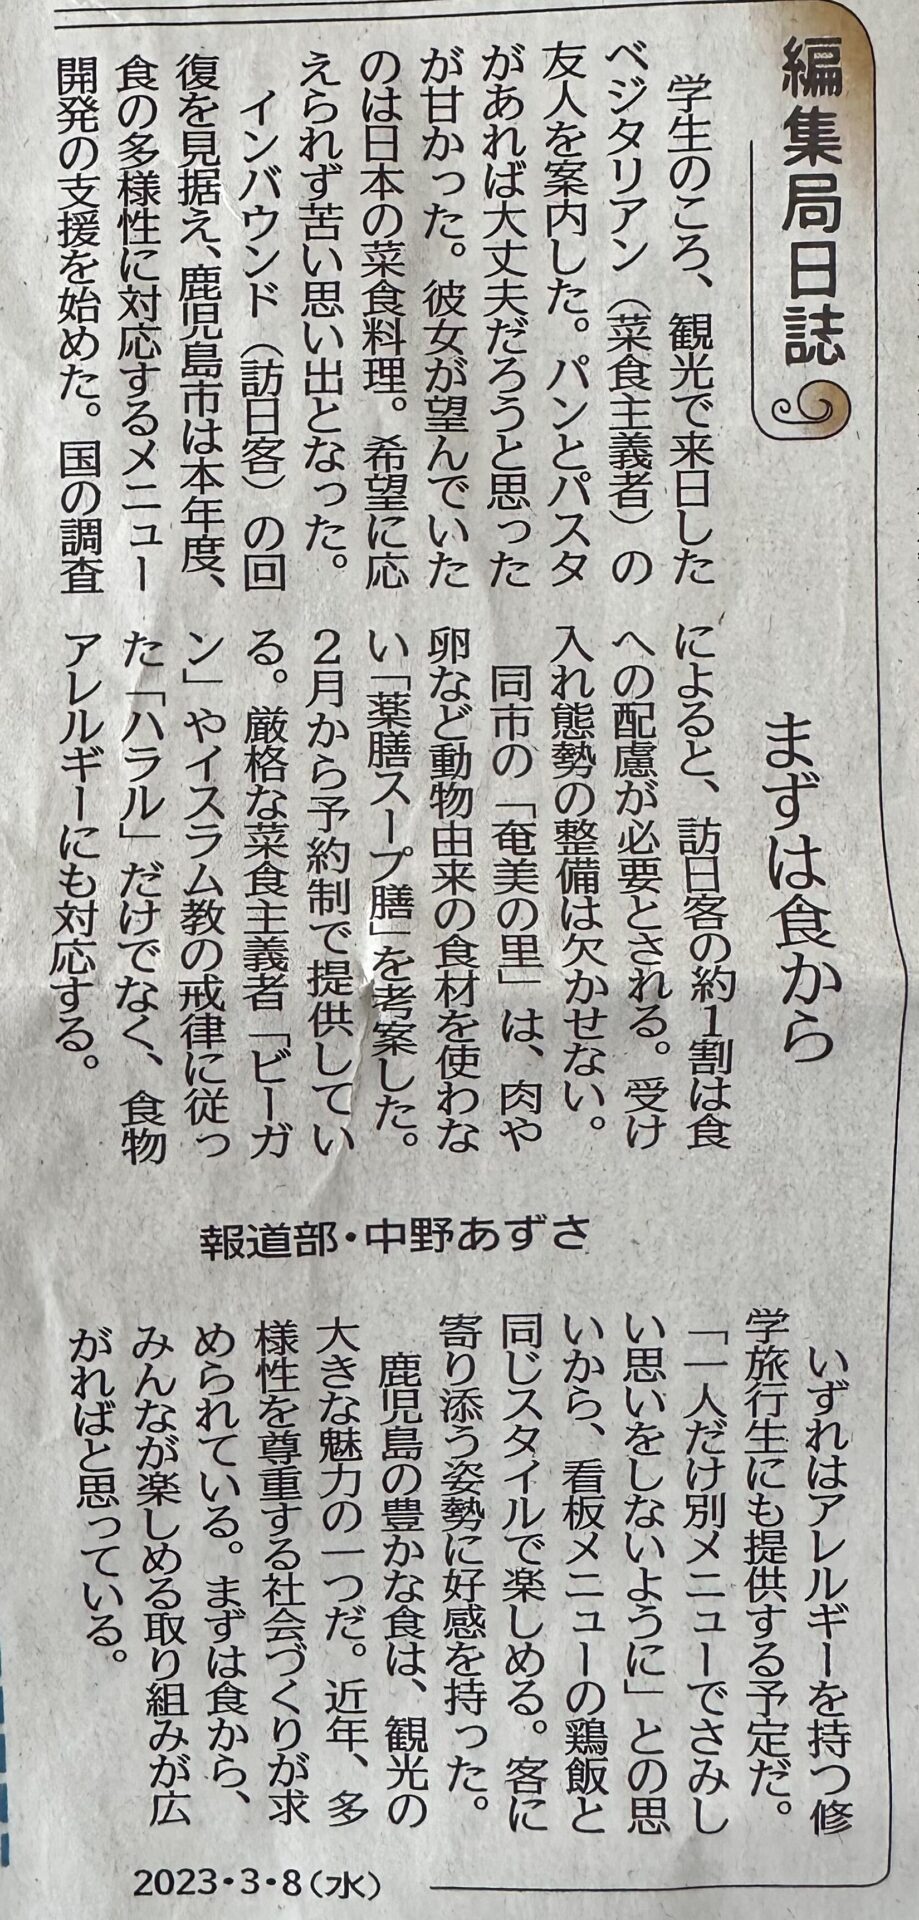 南日本新聞・フードダイバーシティに関する取り組みが掲載されました。